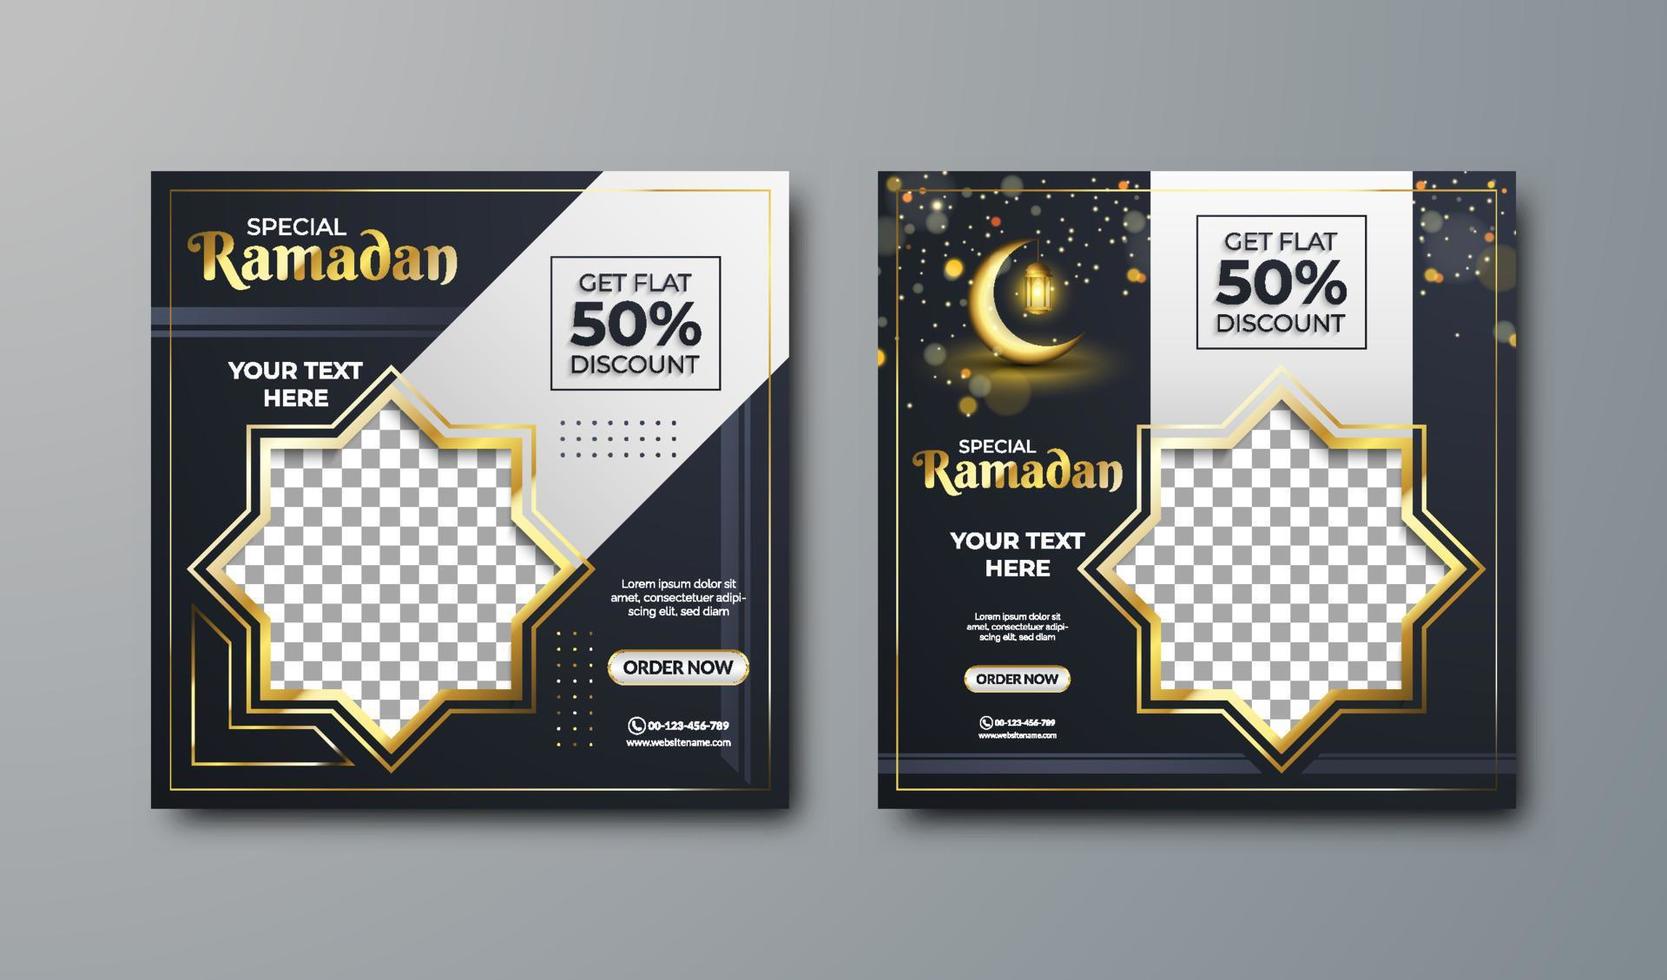 ramadan verkoop sociale media en marketingpost. sjabloon voor spandoek voor sociale media. luxe ramadan-sjabloon met lege gebieden voor afbeeldingen of tekst. vector